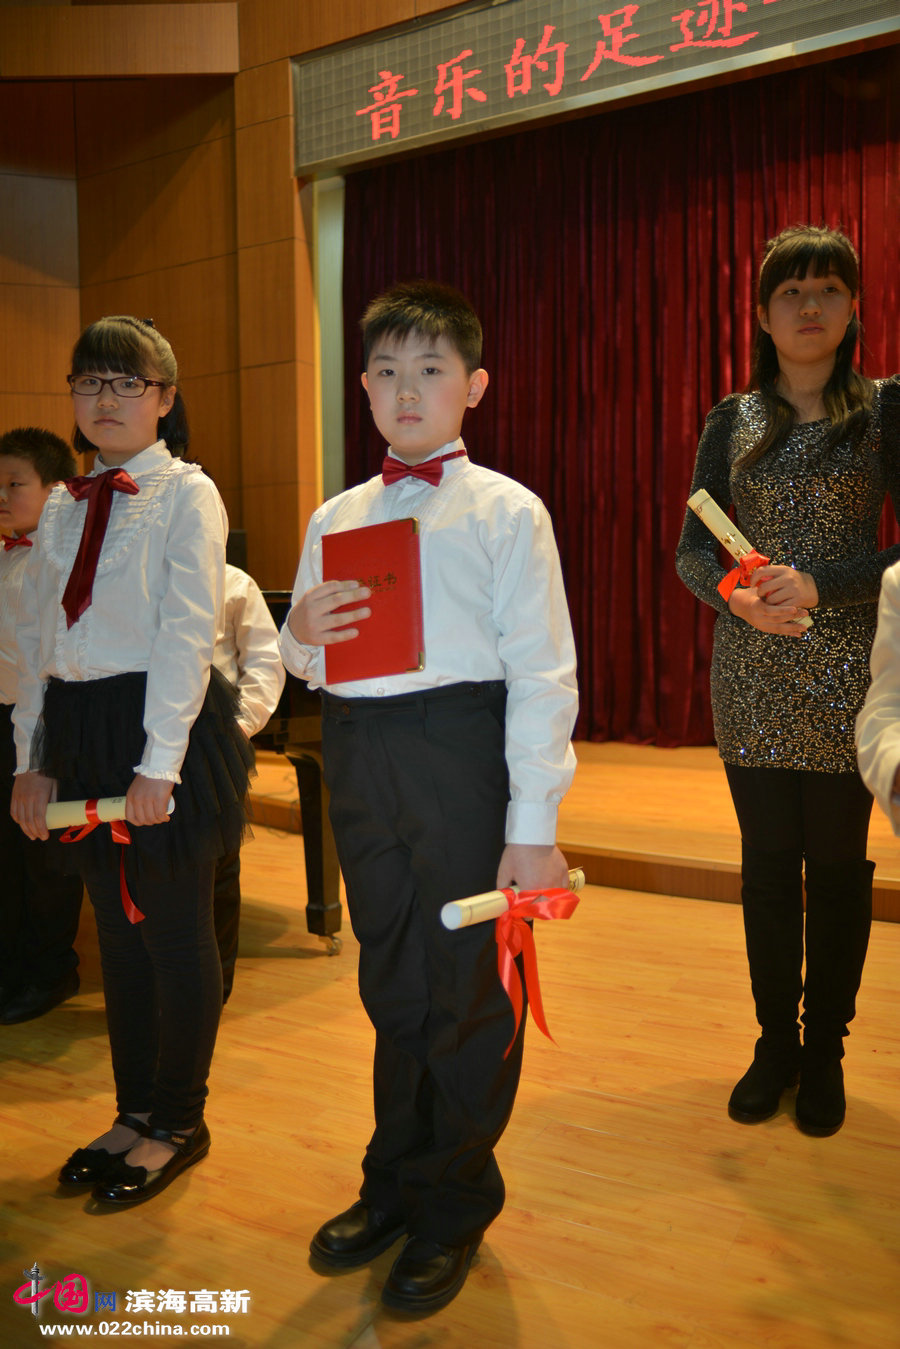 刘明轩荣获3013年最高奖励“水晶钢琴奖”